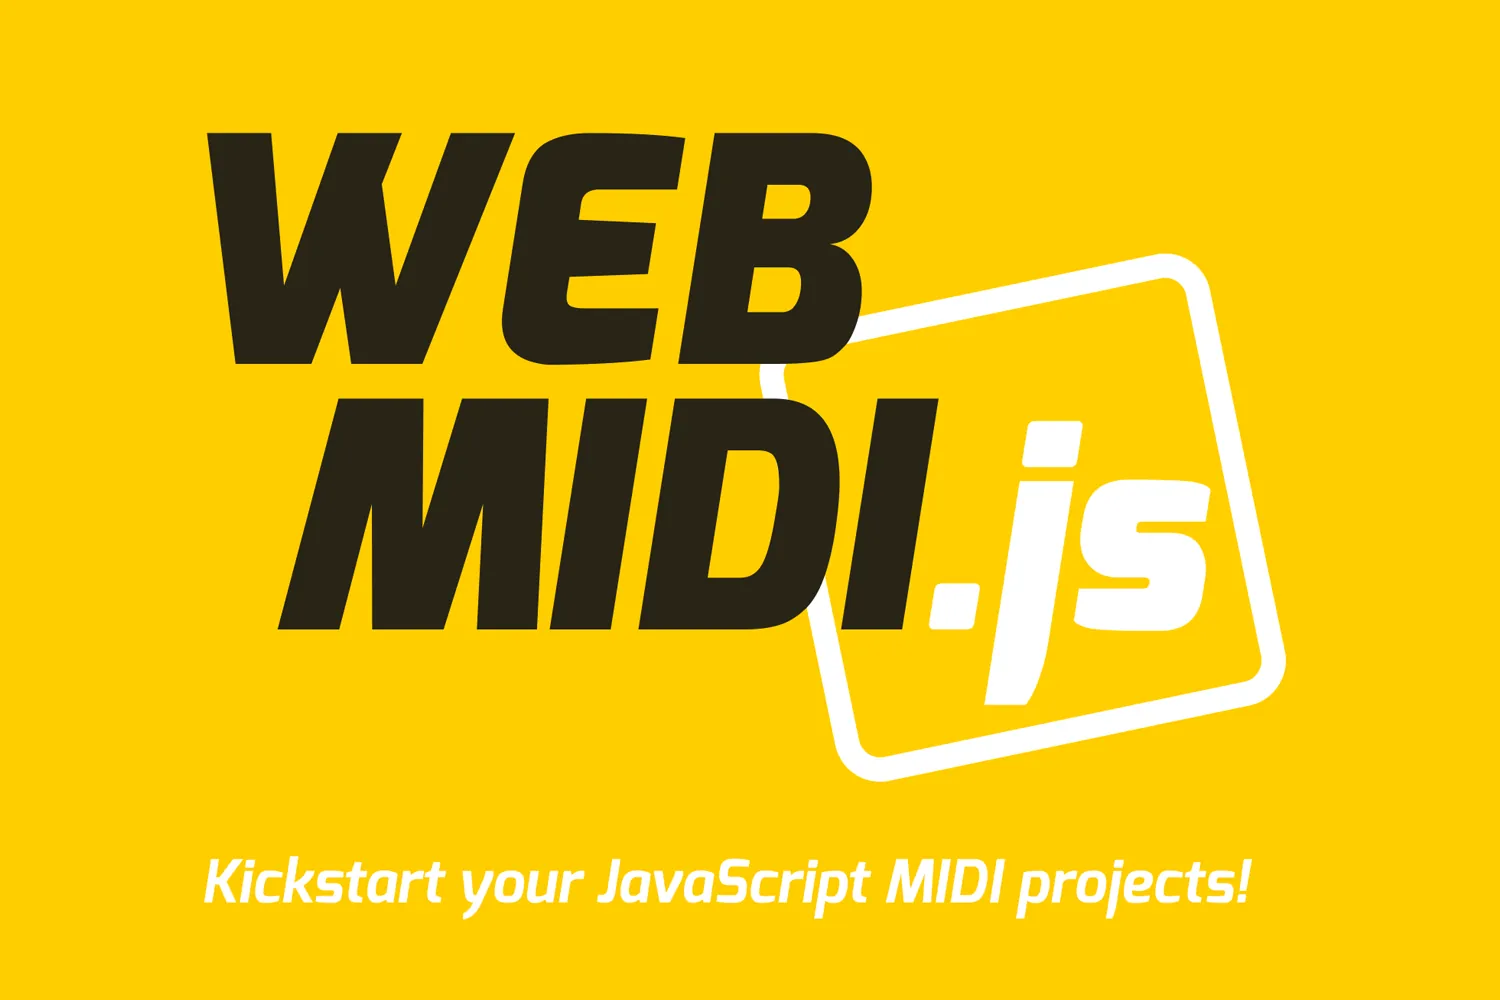 Kickstart your JavaScript MIDI projects!